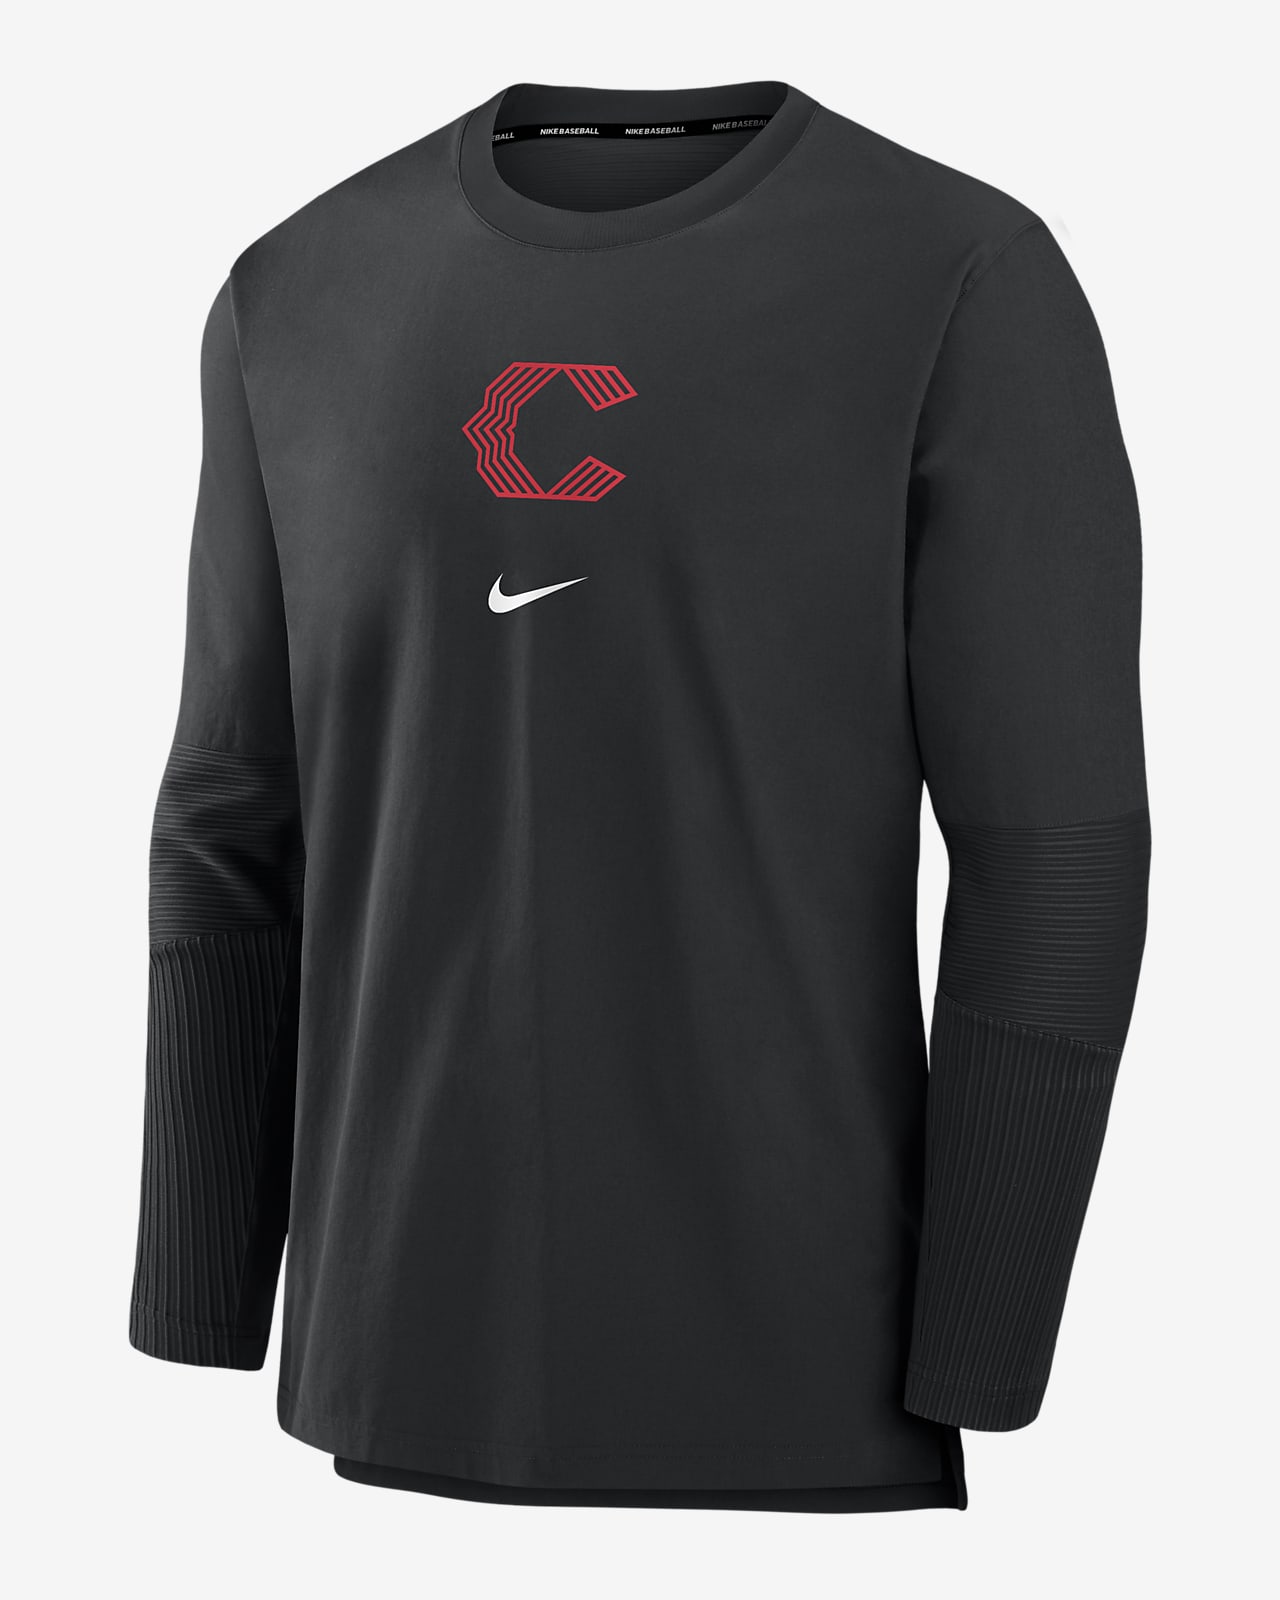 Chamarra Nike Dri-FIT de la MLB sin cierre para hombre Cincinnati Reds Authentic Collection City Connect Player